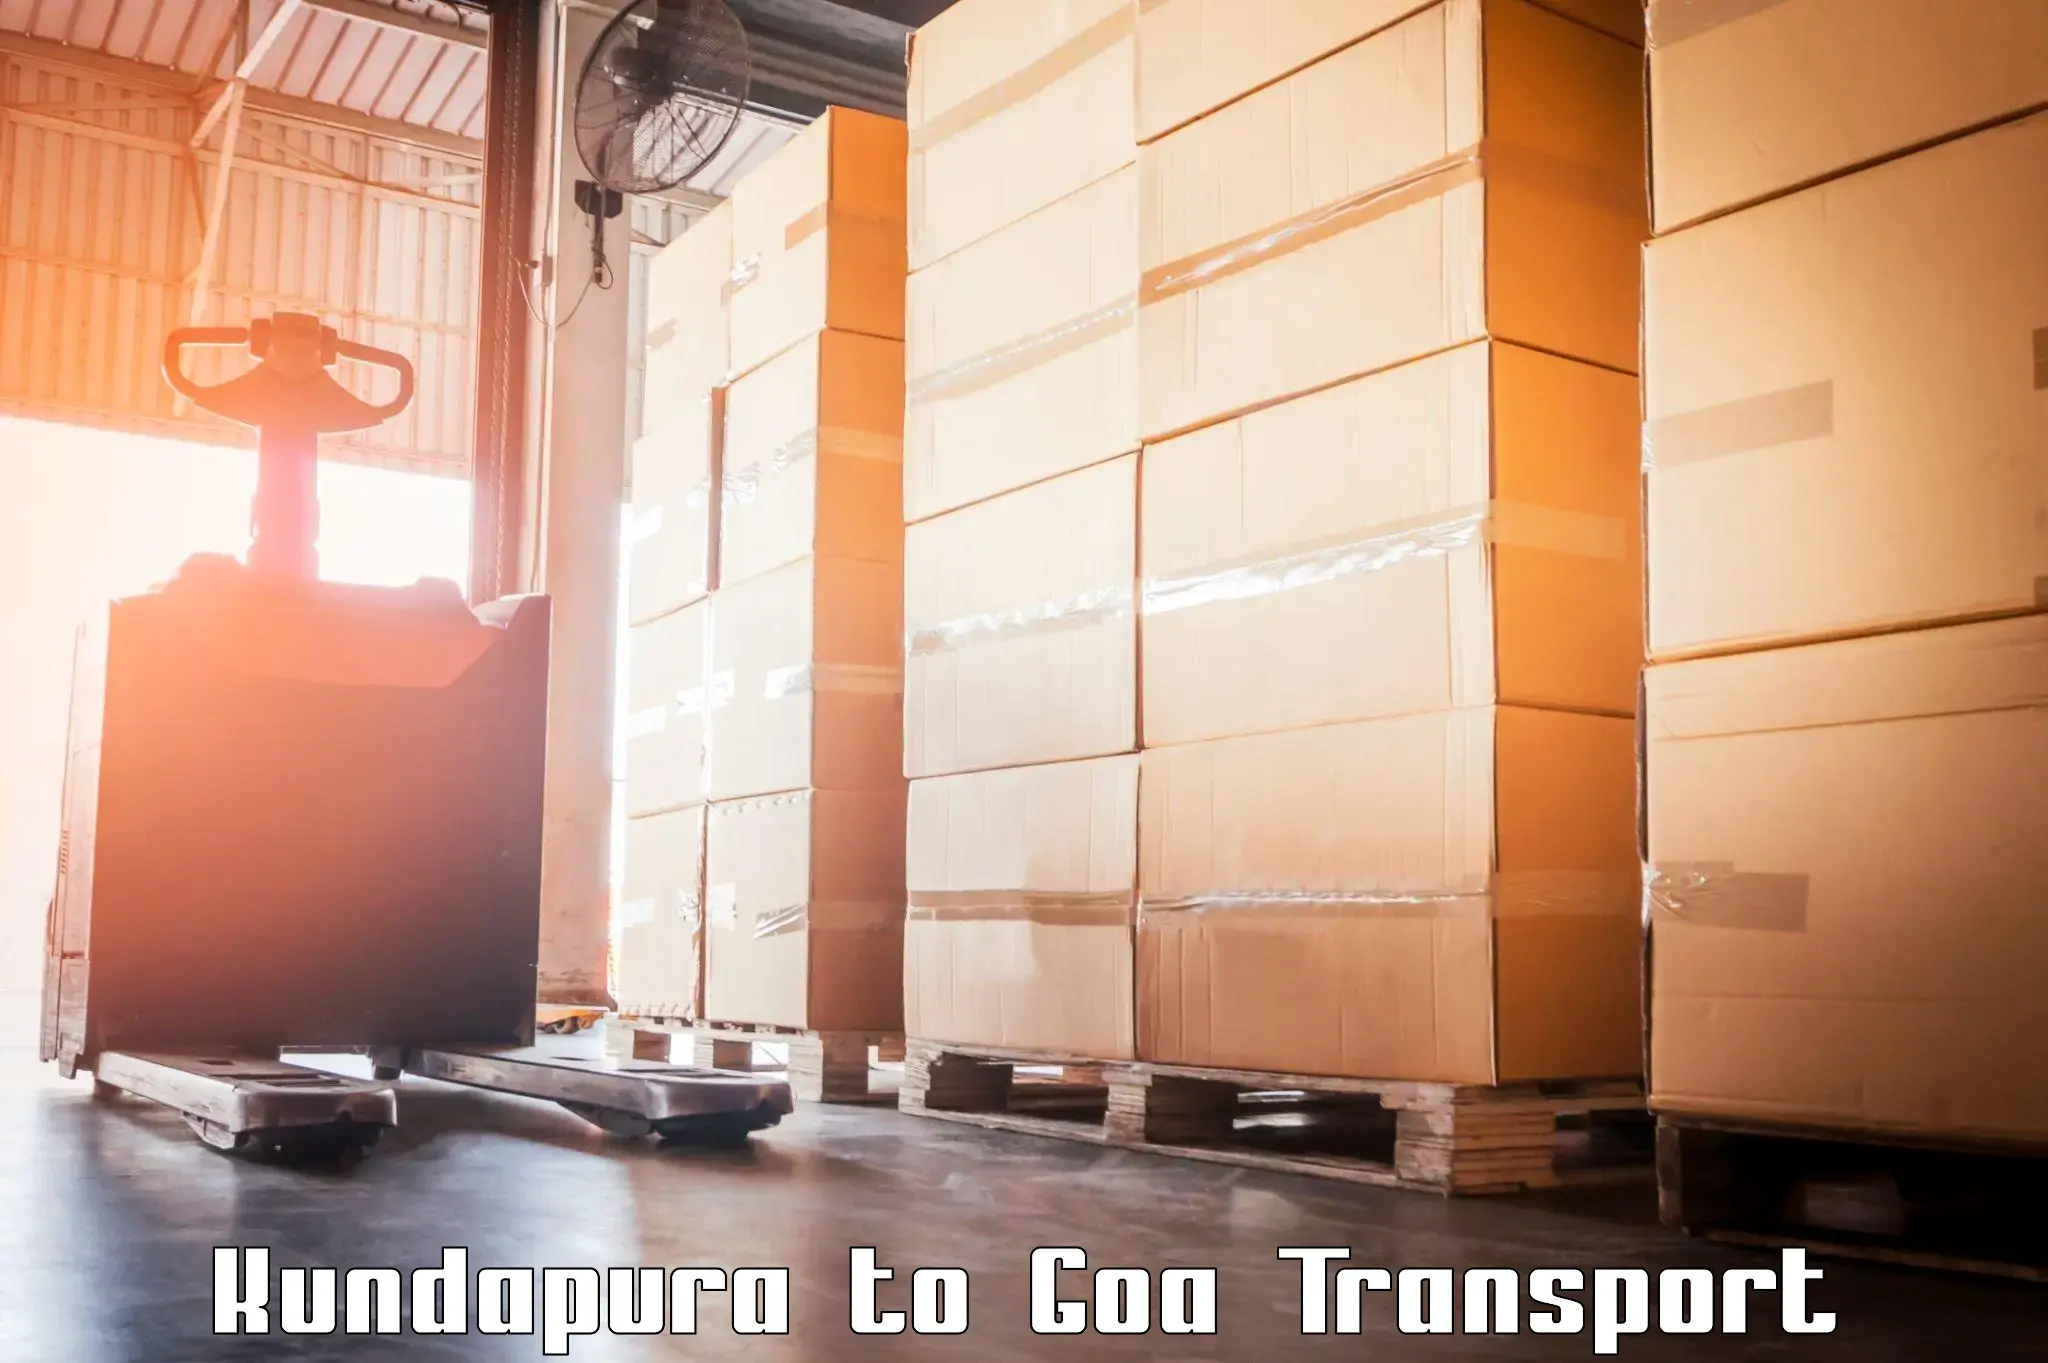 Transport in sharing Kundapura to Goa